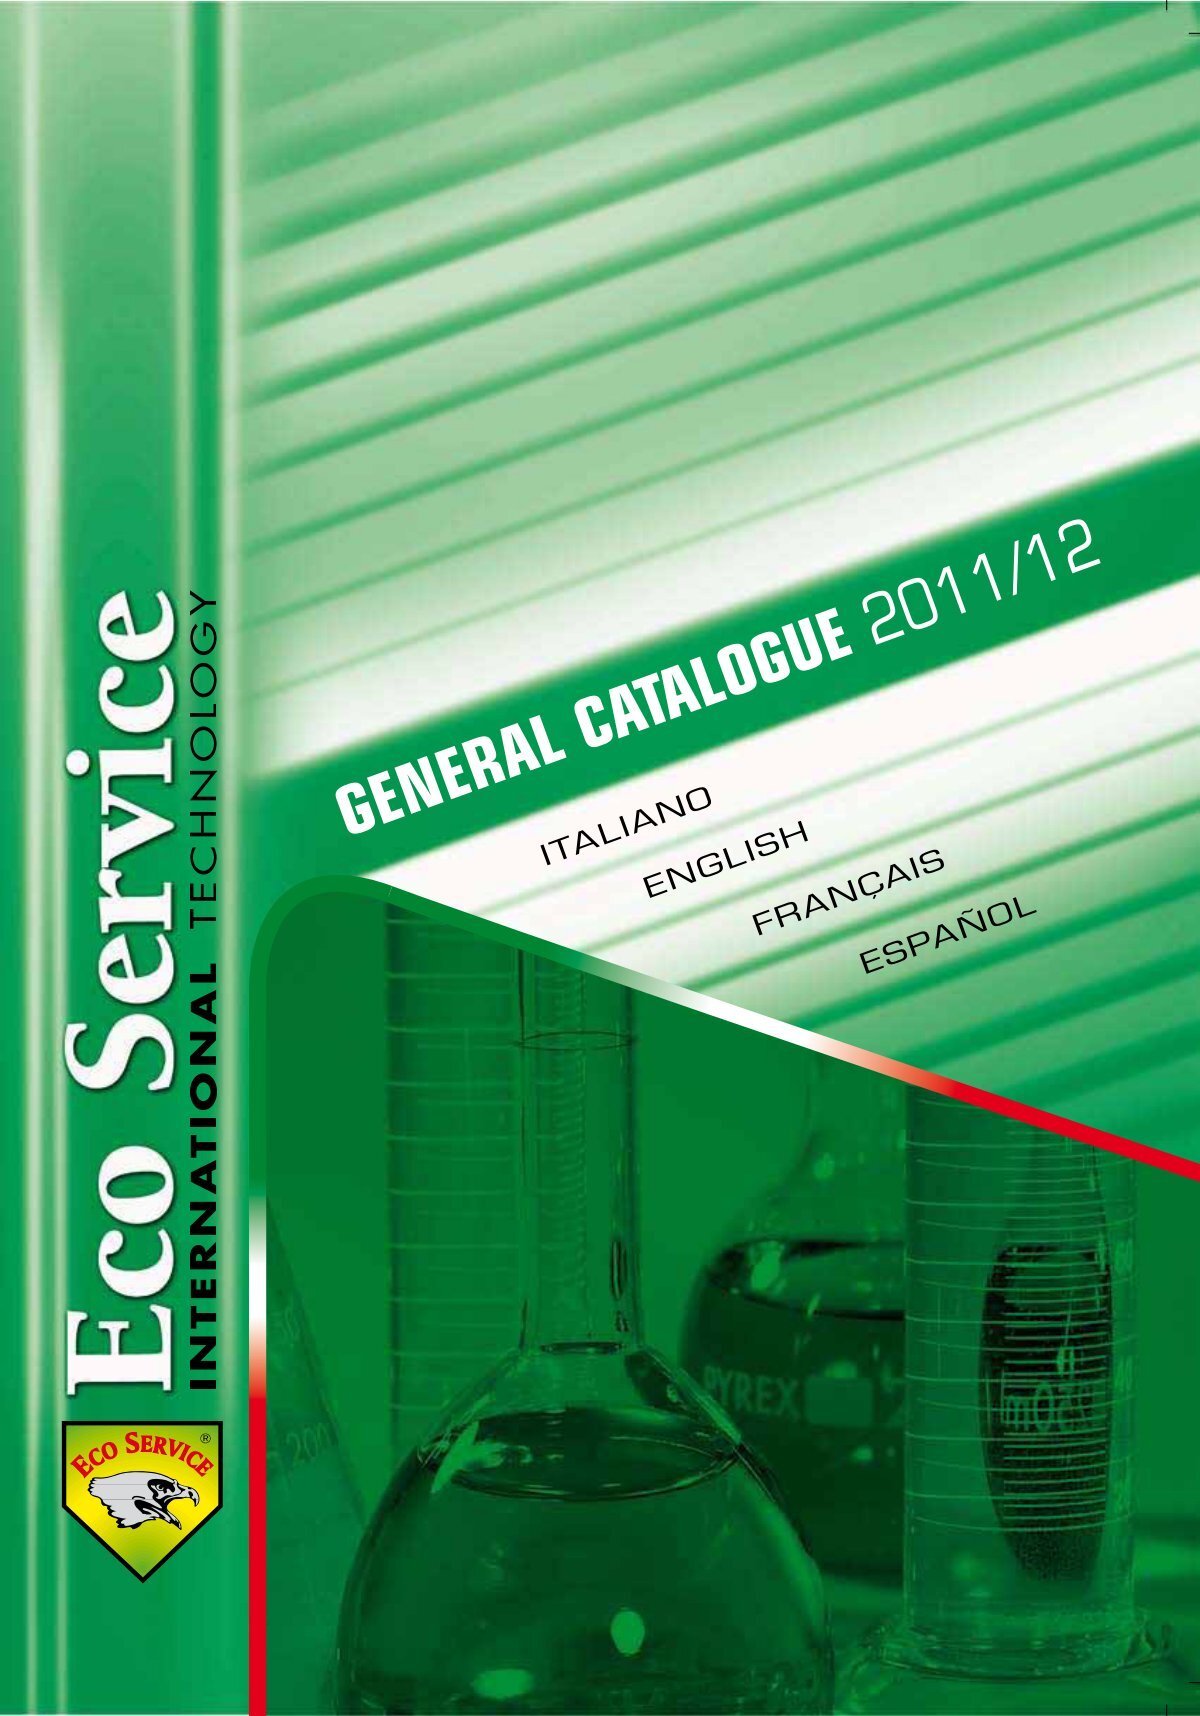 general catalogue 2011/12 general catalogue 2011/12 general